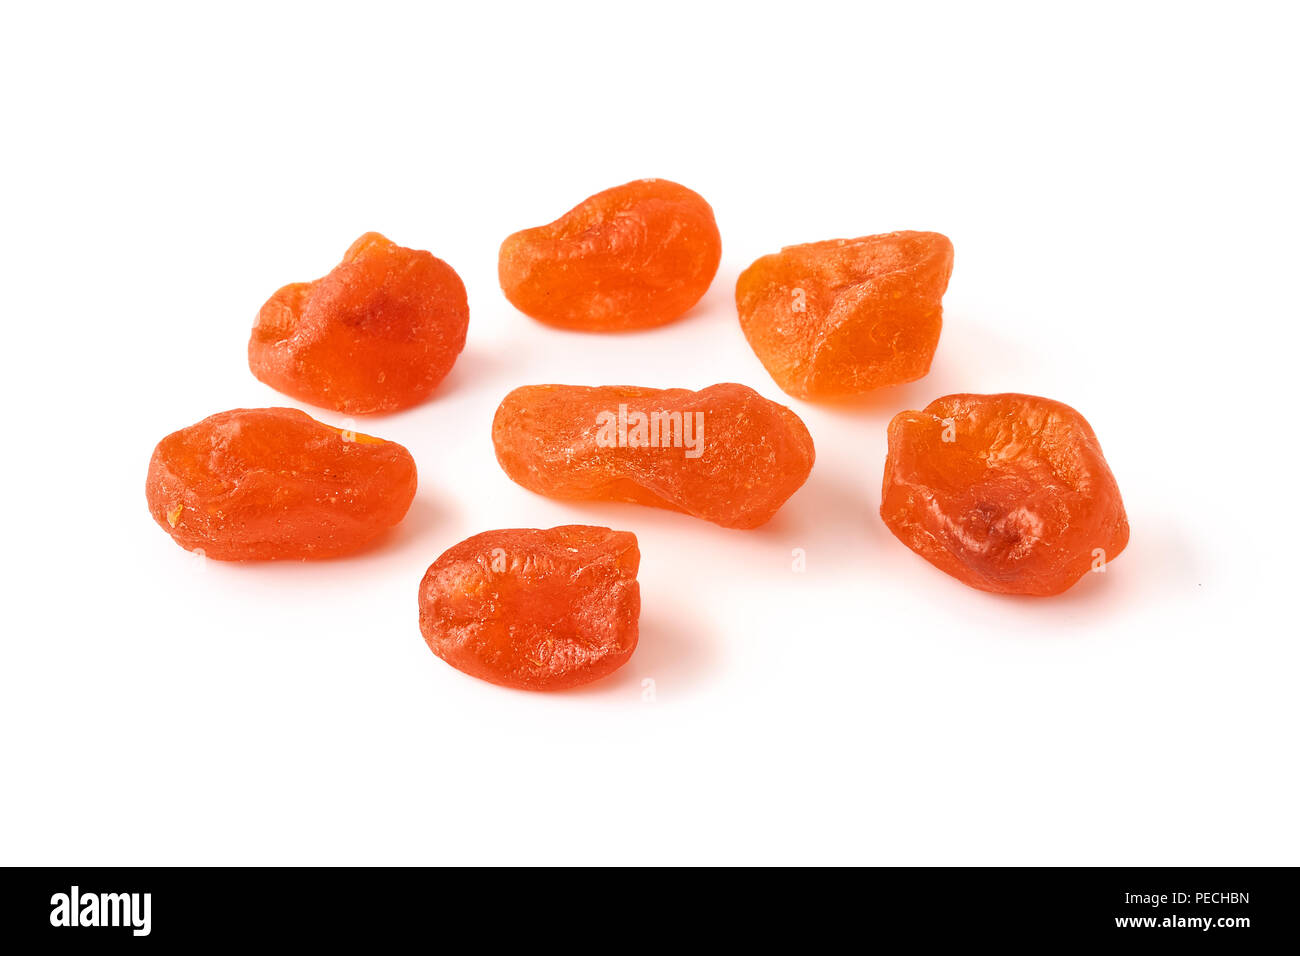 Dried orange kumquat isolated on white background. Stock Photo